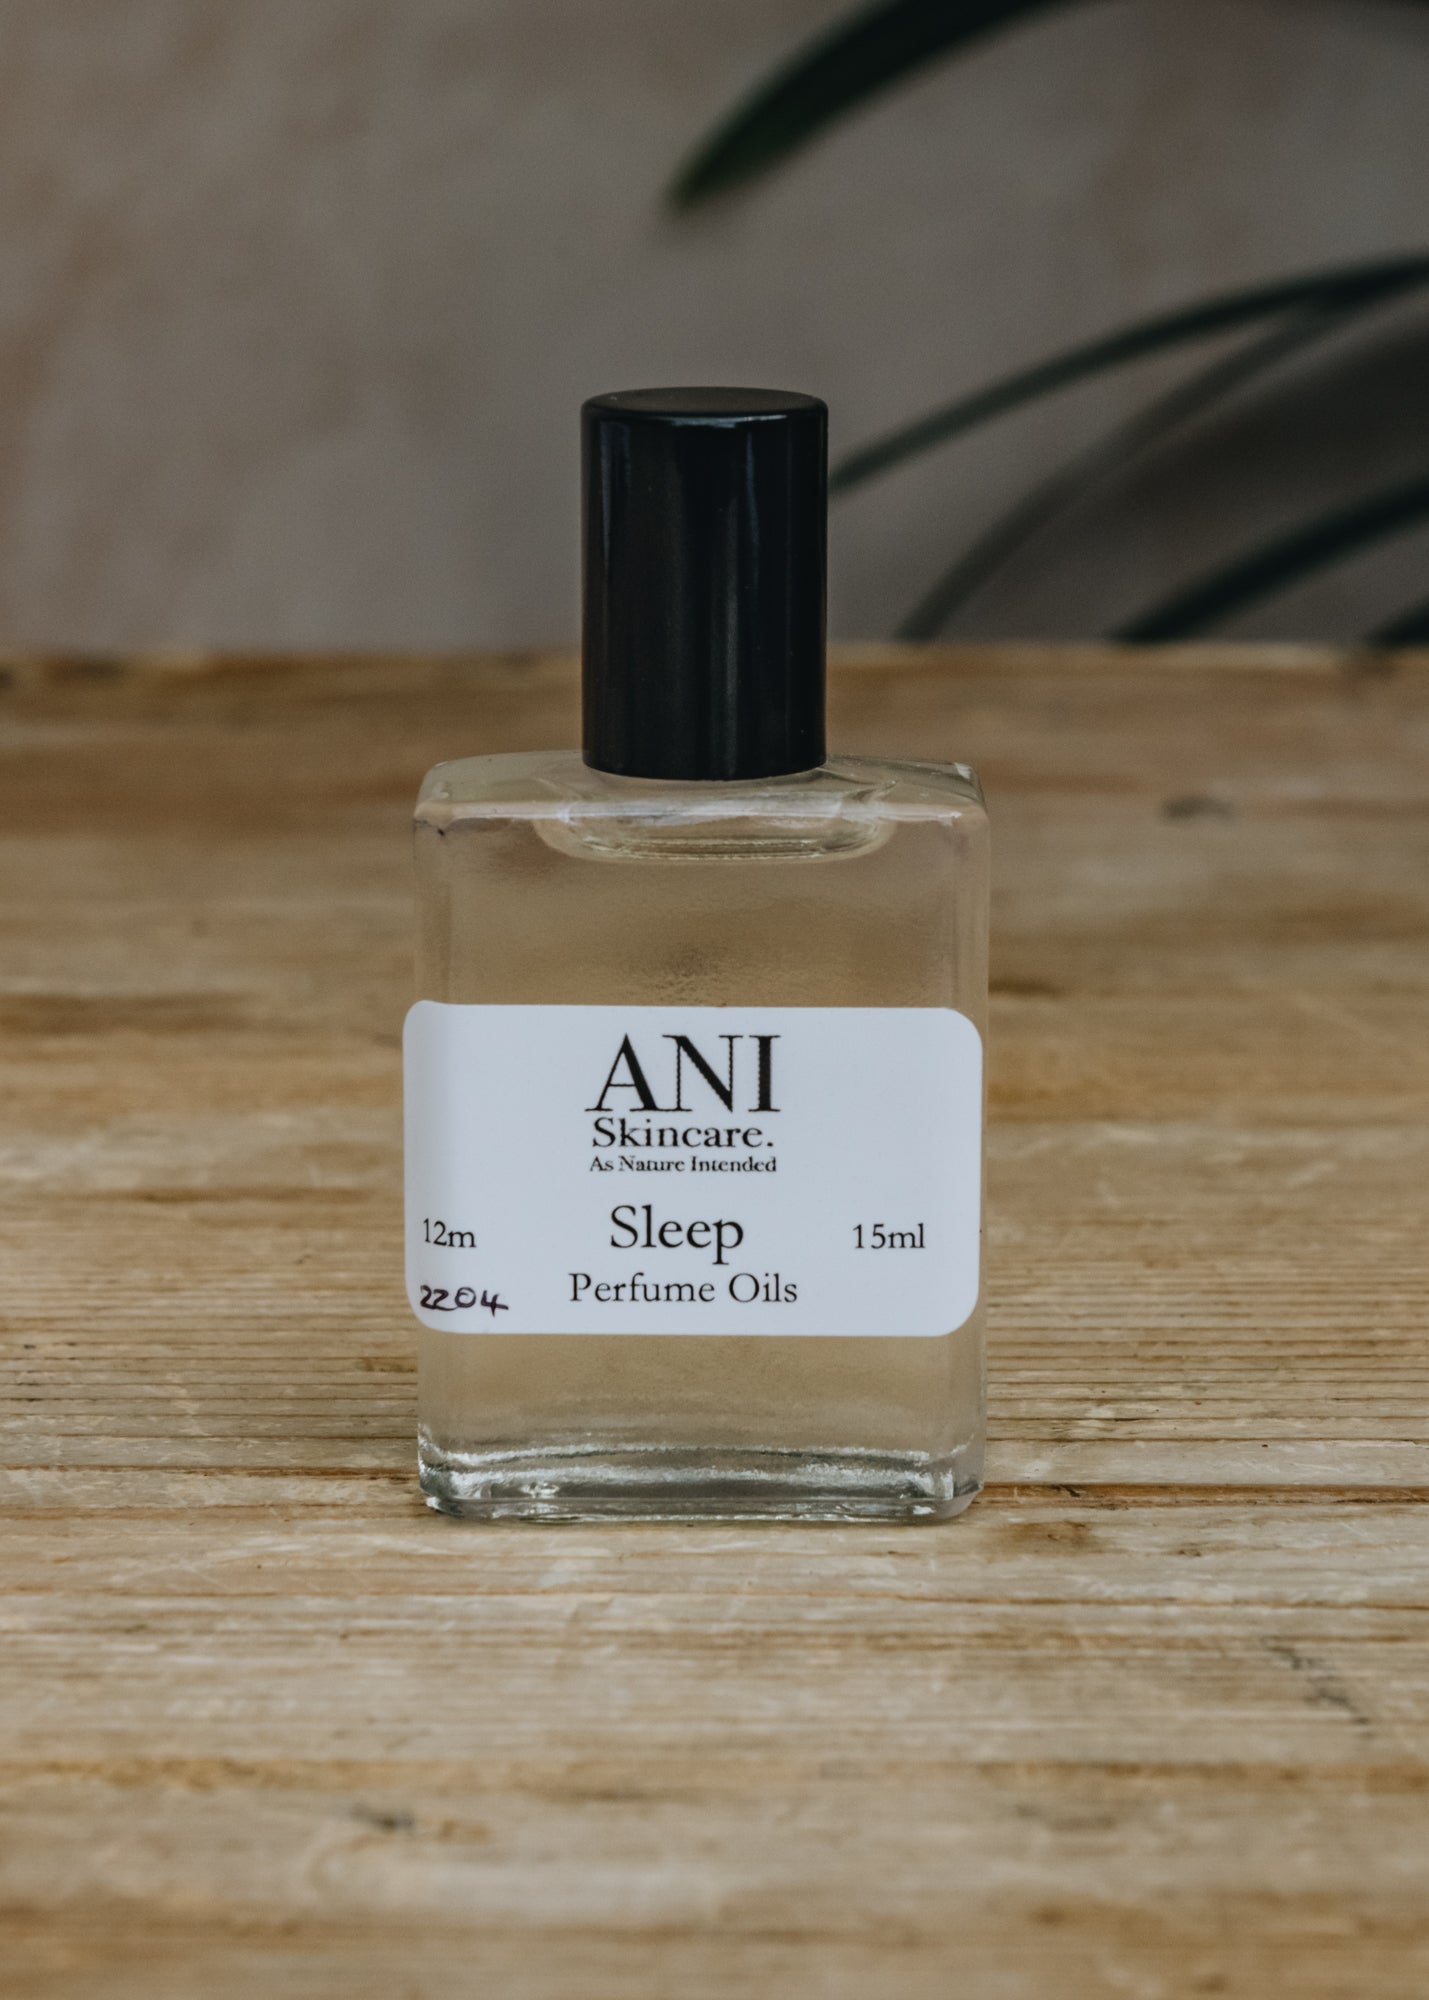 ANI Sleep Perfume Oil